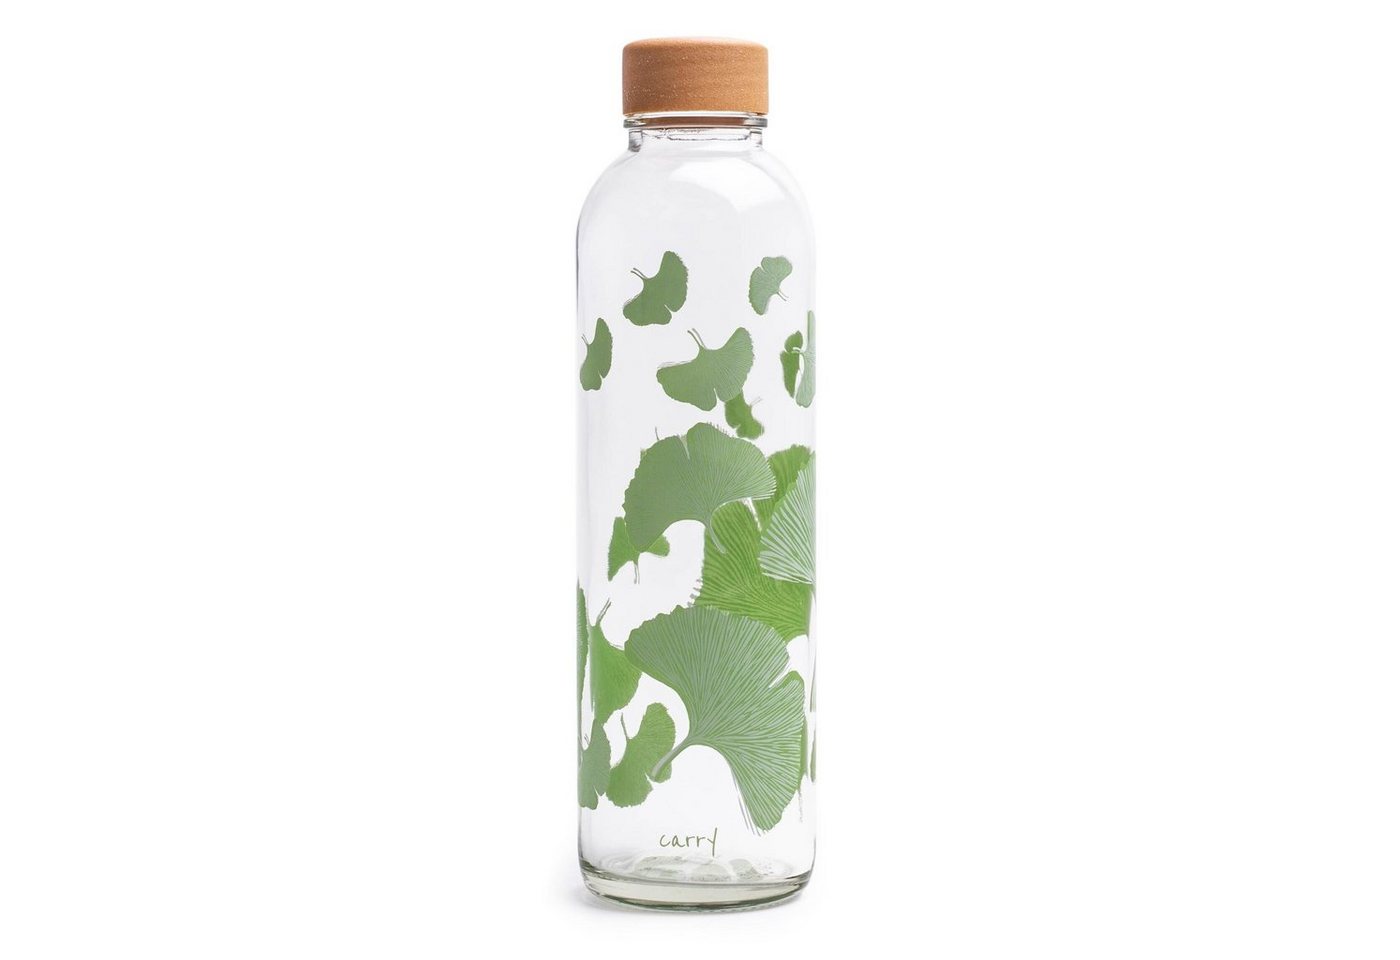 Carry Bottle Trinkflasche Carry-Bottle - FREE YOUR MIND 0,7 l, Hochwertige Trinkflasche aus Glas mit verschiedenen Aufdrucken. von Carry Bottle